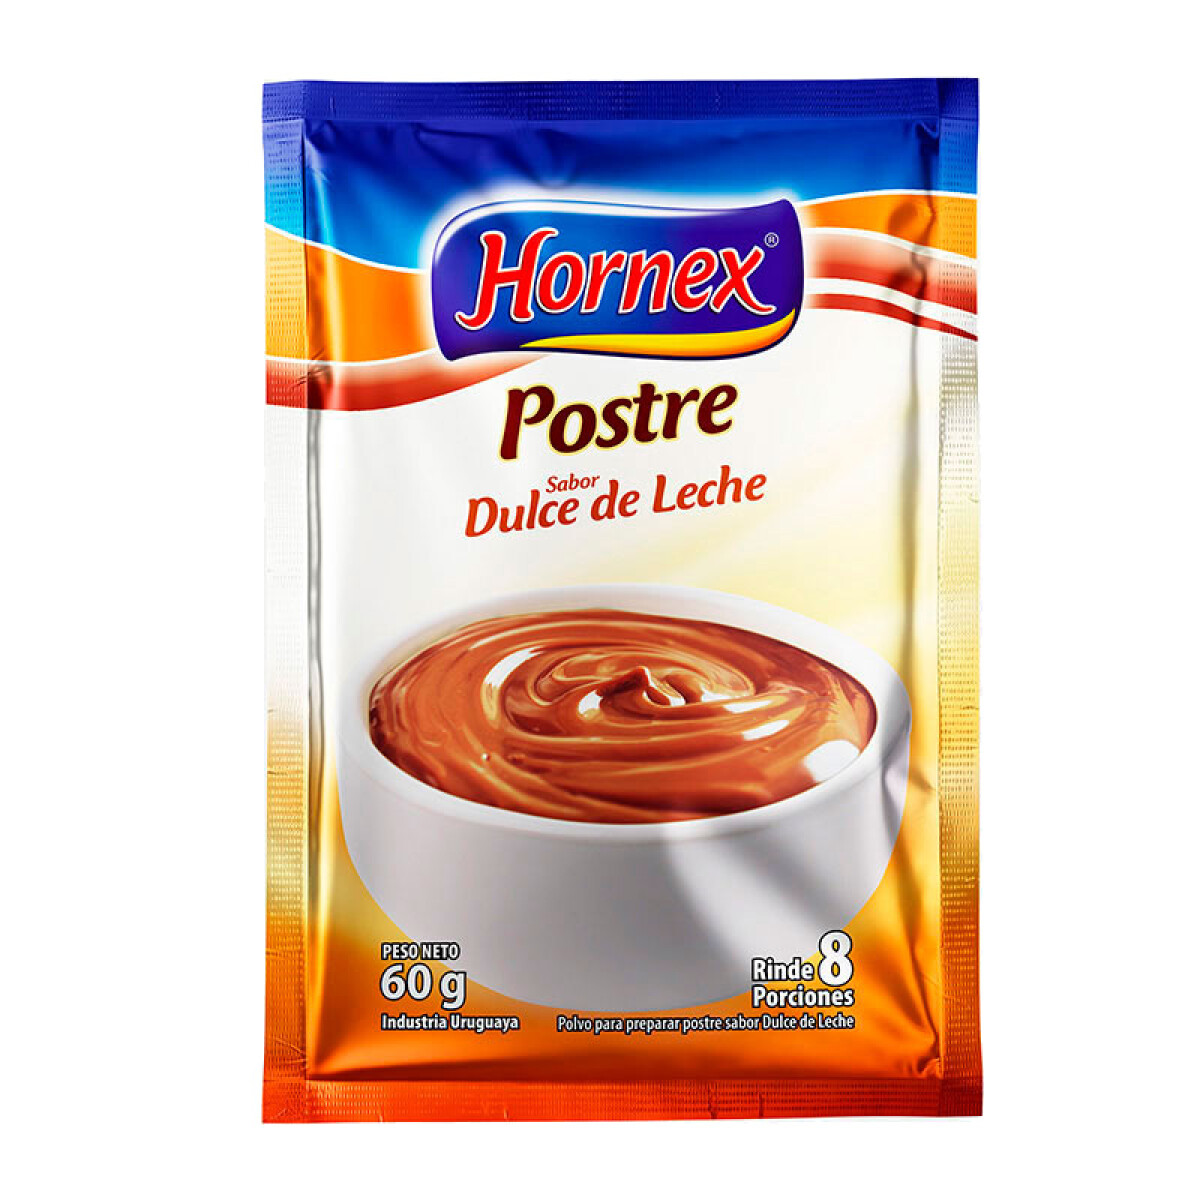 Postre HORNEX 60grs rinde 8 porciones - Dulce de leche 